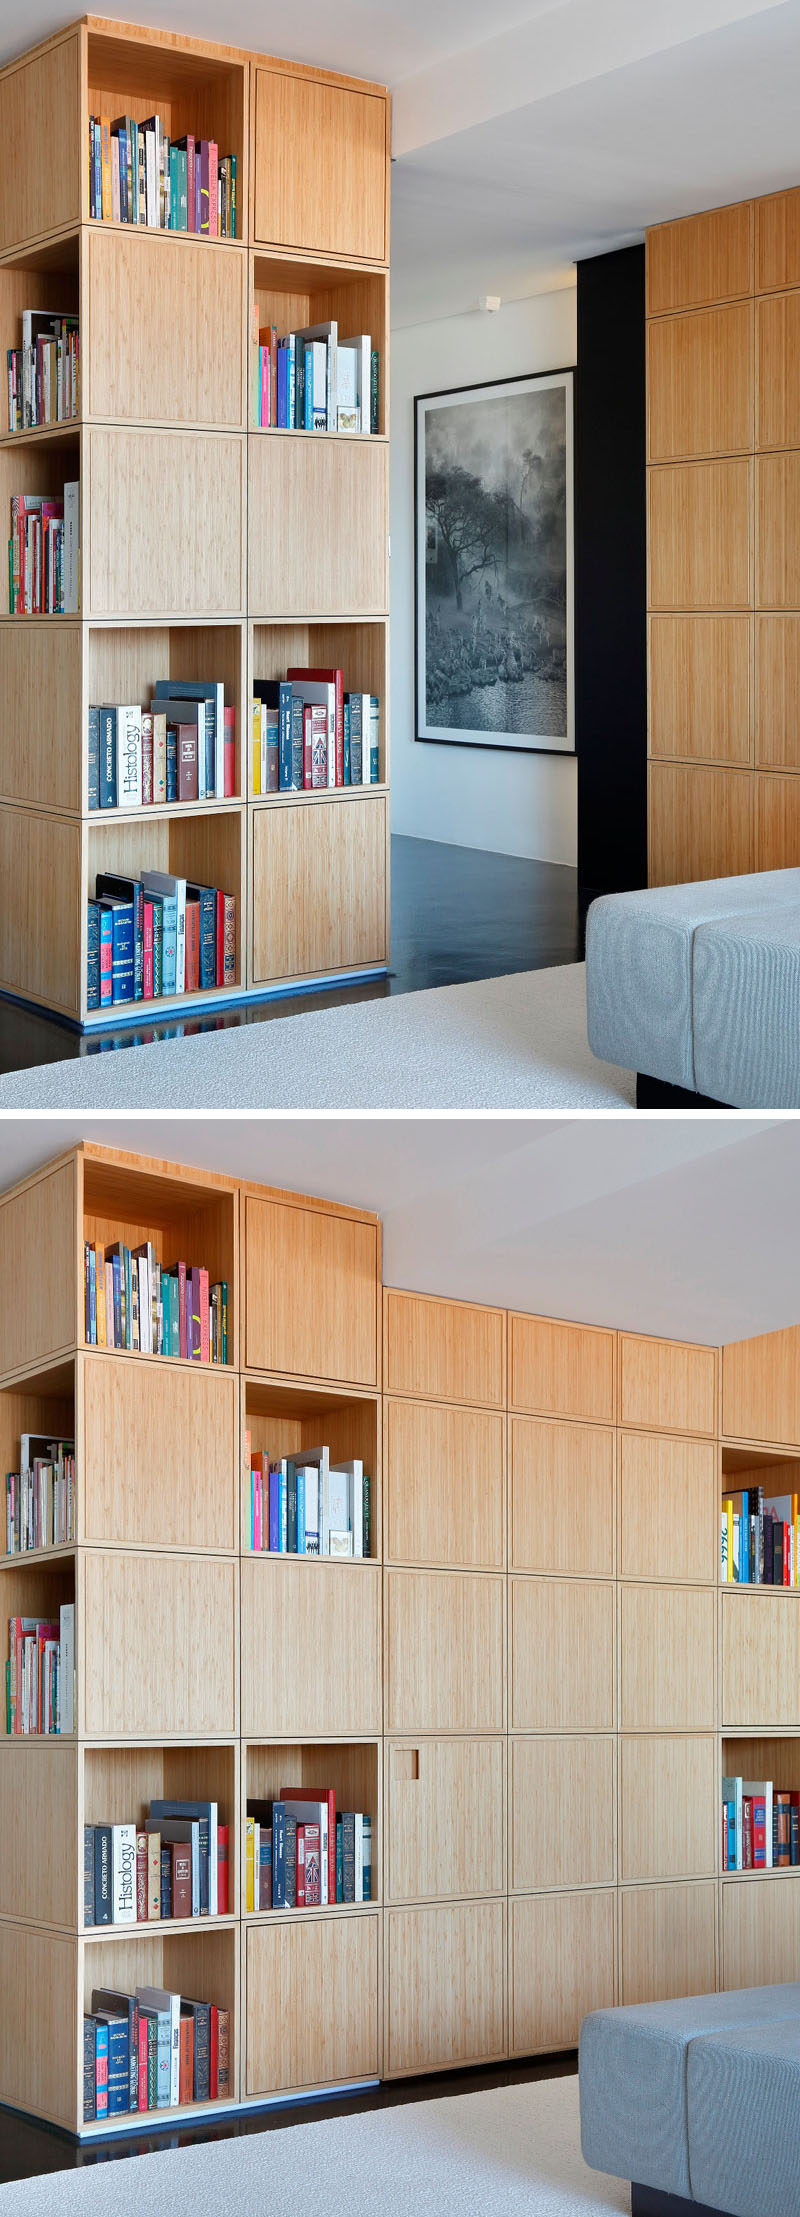 Прихожая в этой современной квартире скрыта за U-образным деревянным книжным шкафом и не видна, когда дверь закрывается и сливается с остальной частью книжного шкафа.